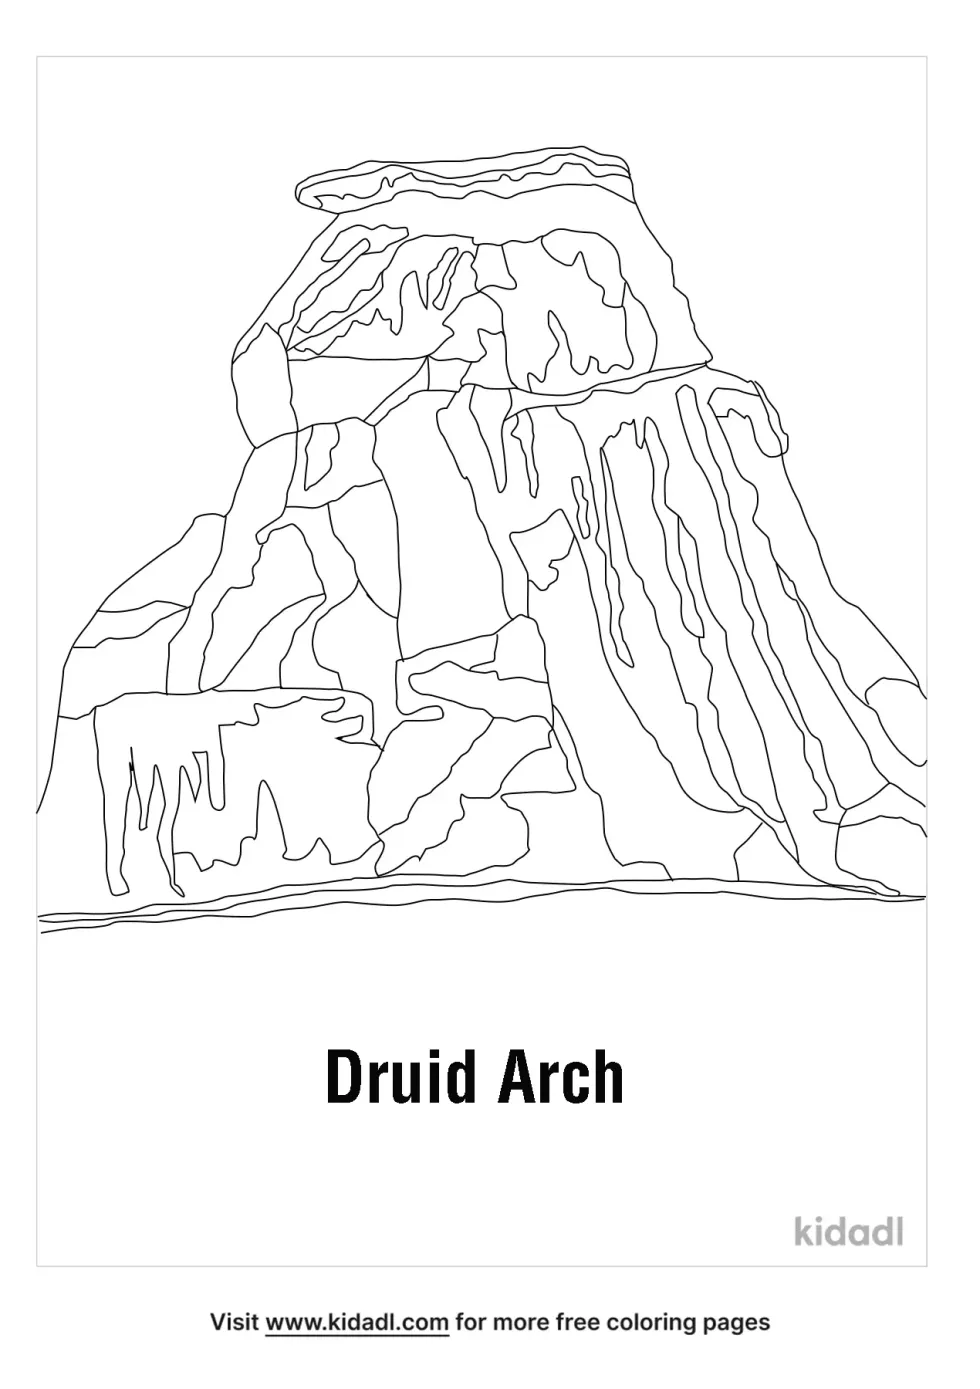 Druid Arch